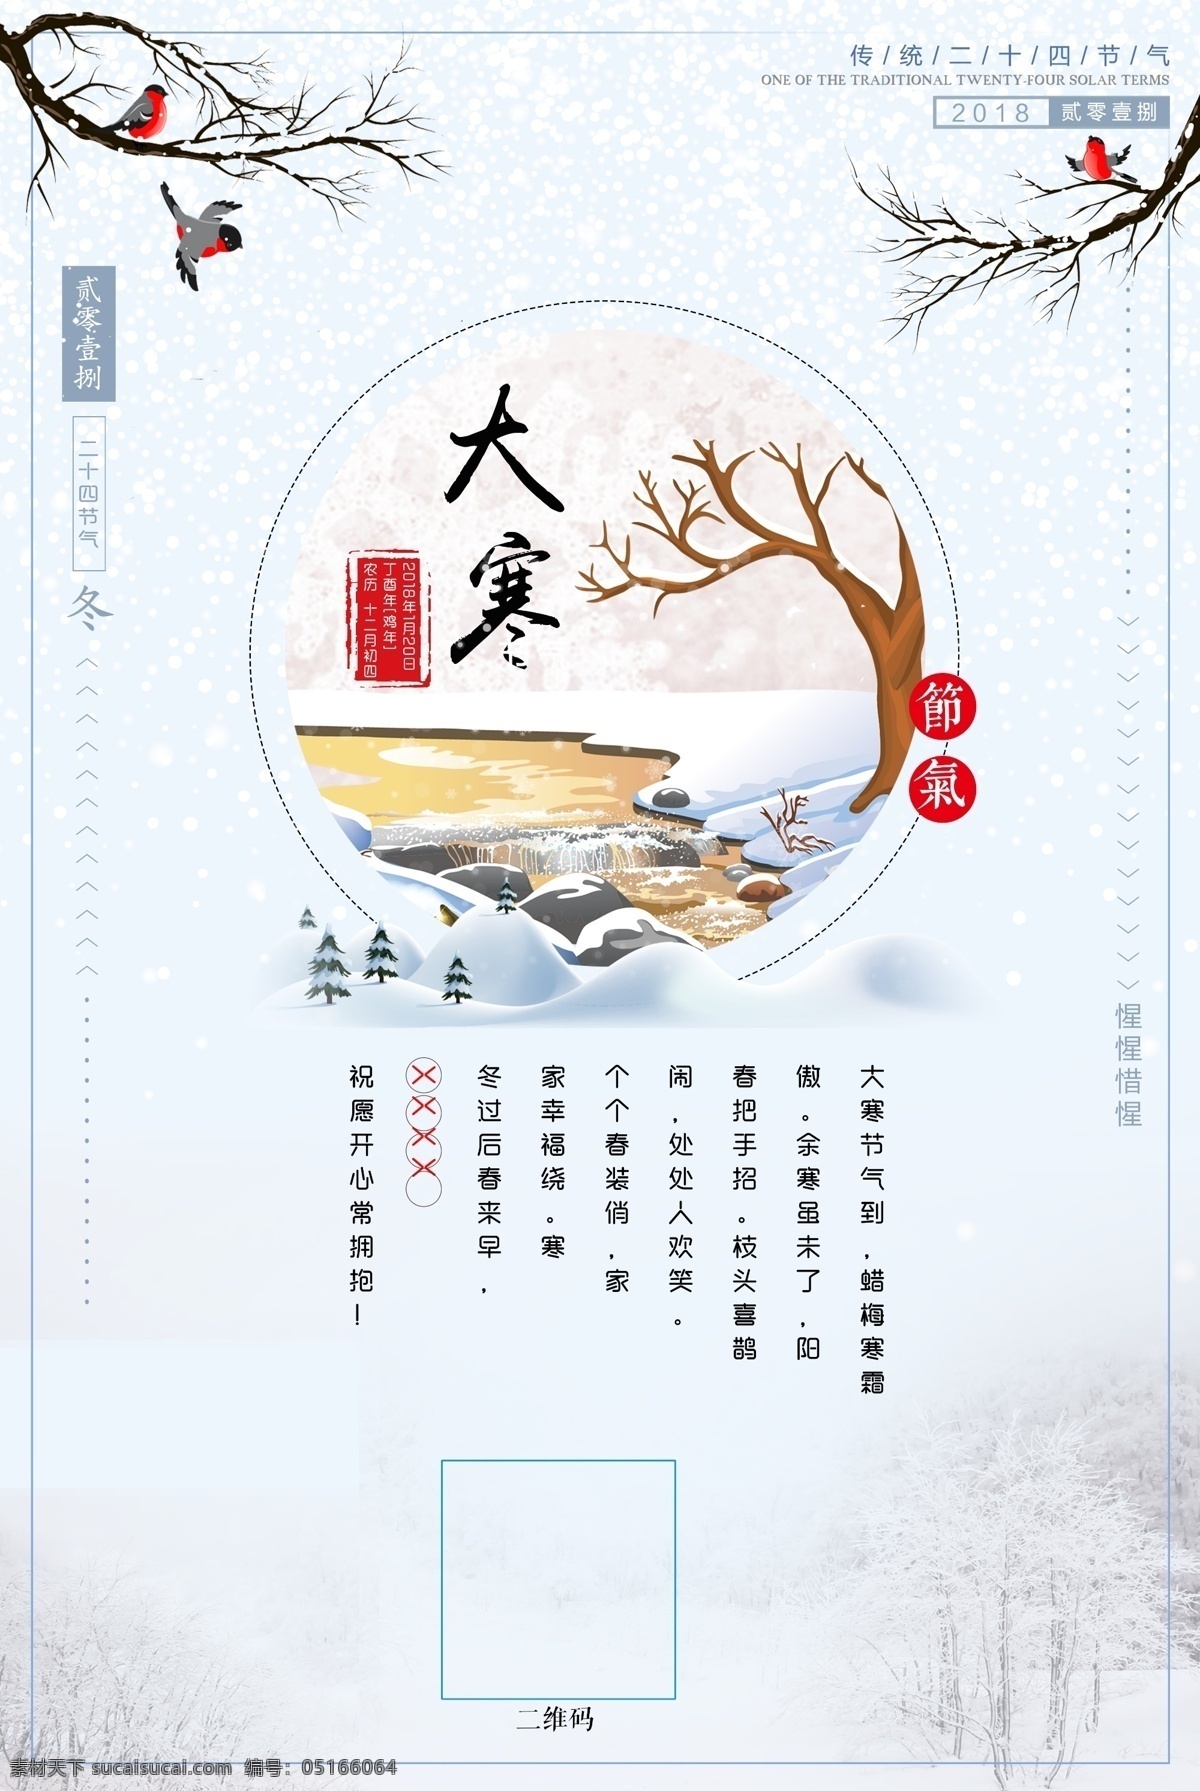 梦幻 雪景 大寒 节气 节日 海报 二十四节气 冬天 祝福 宣传